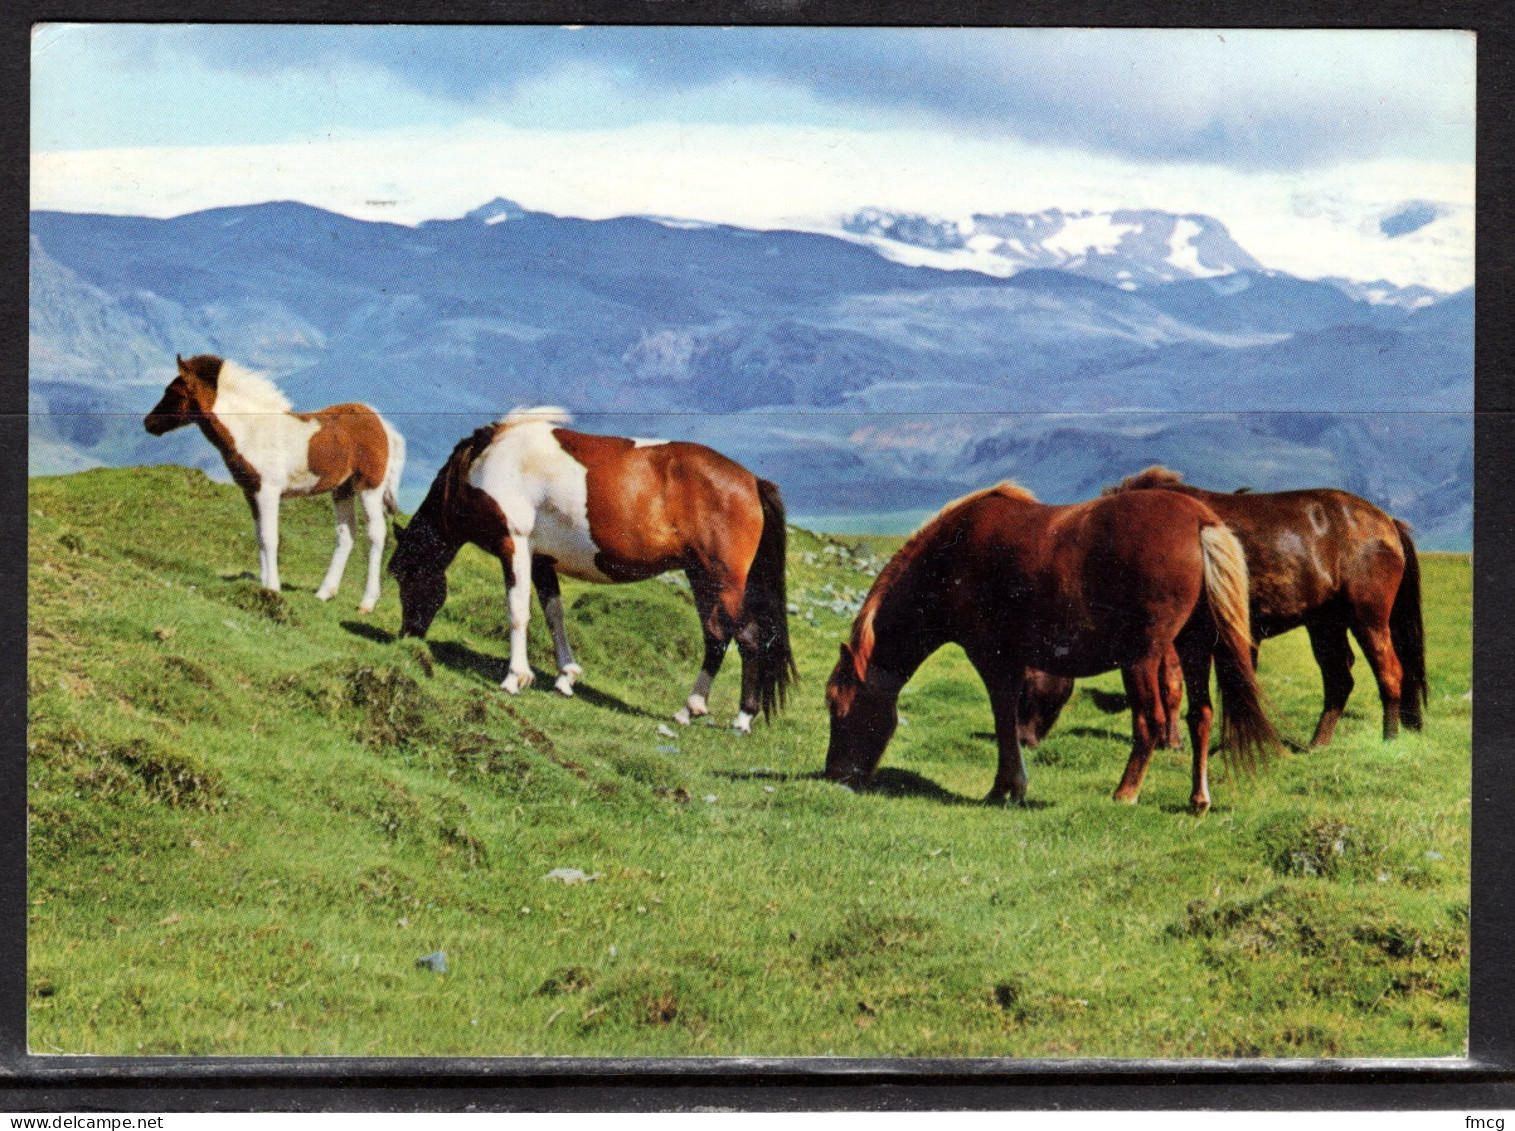 Iceland Horses, Mailed To USA - Horses